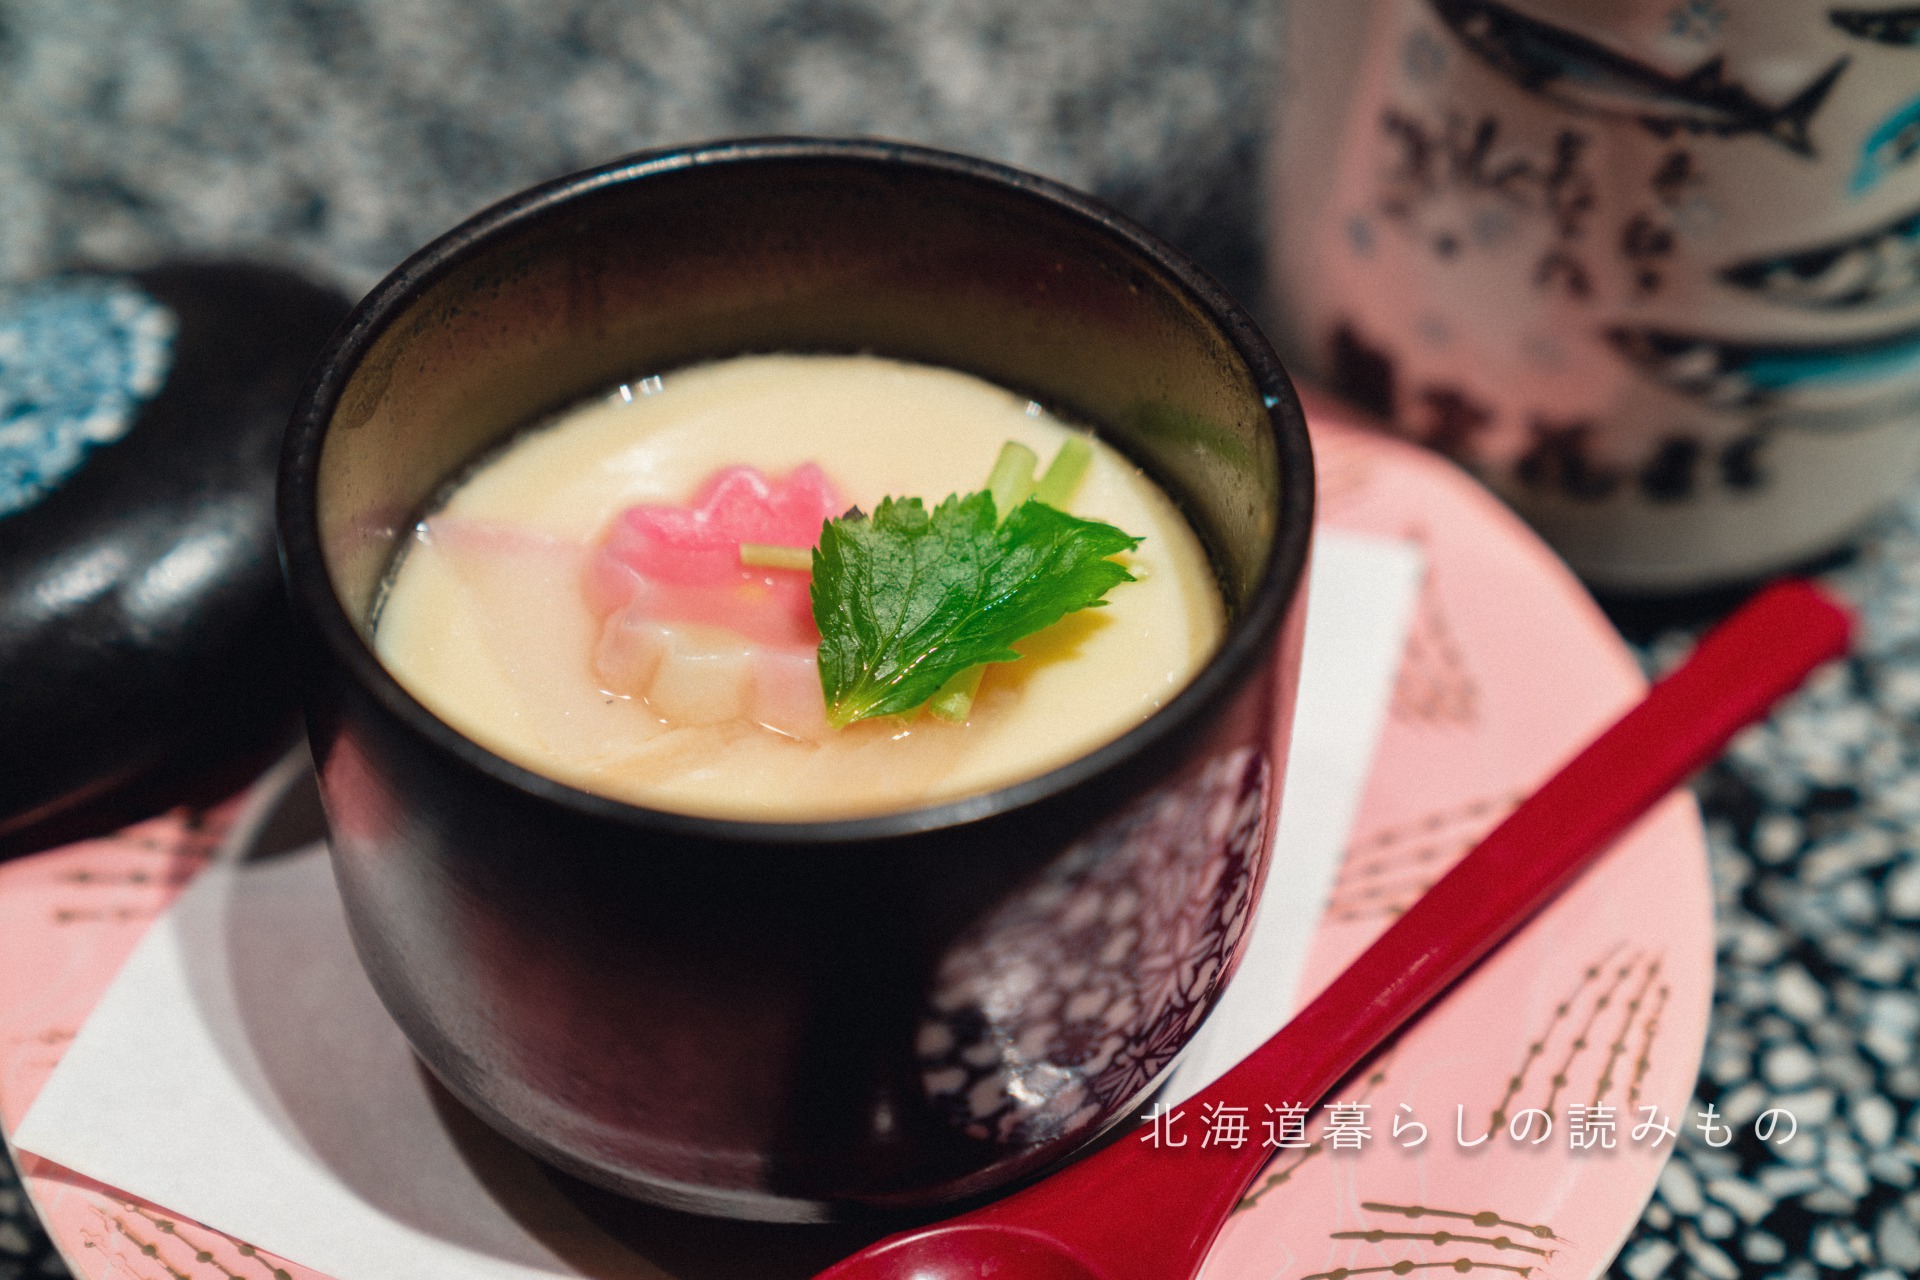 回転寿司 根室花まるのメニュー「茶碗蒸し」の写真